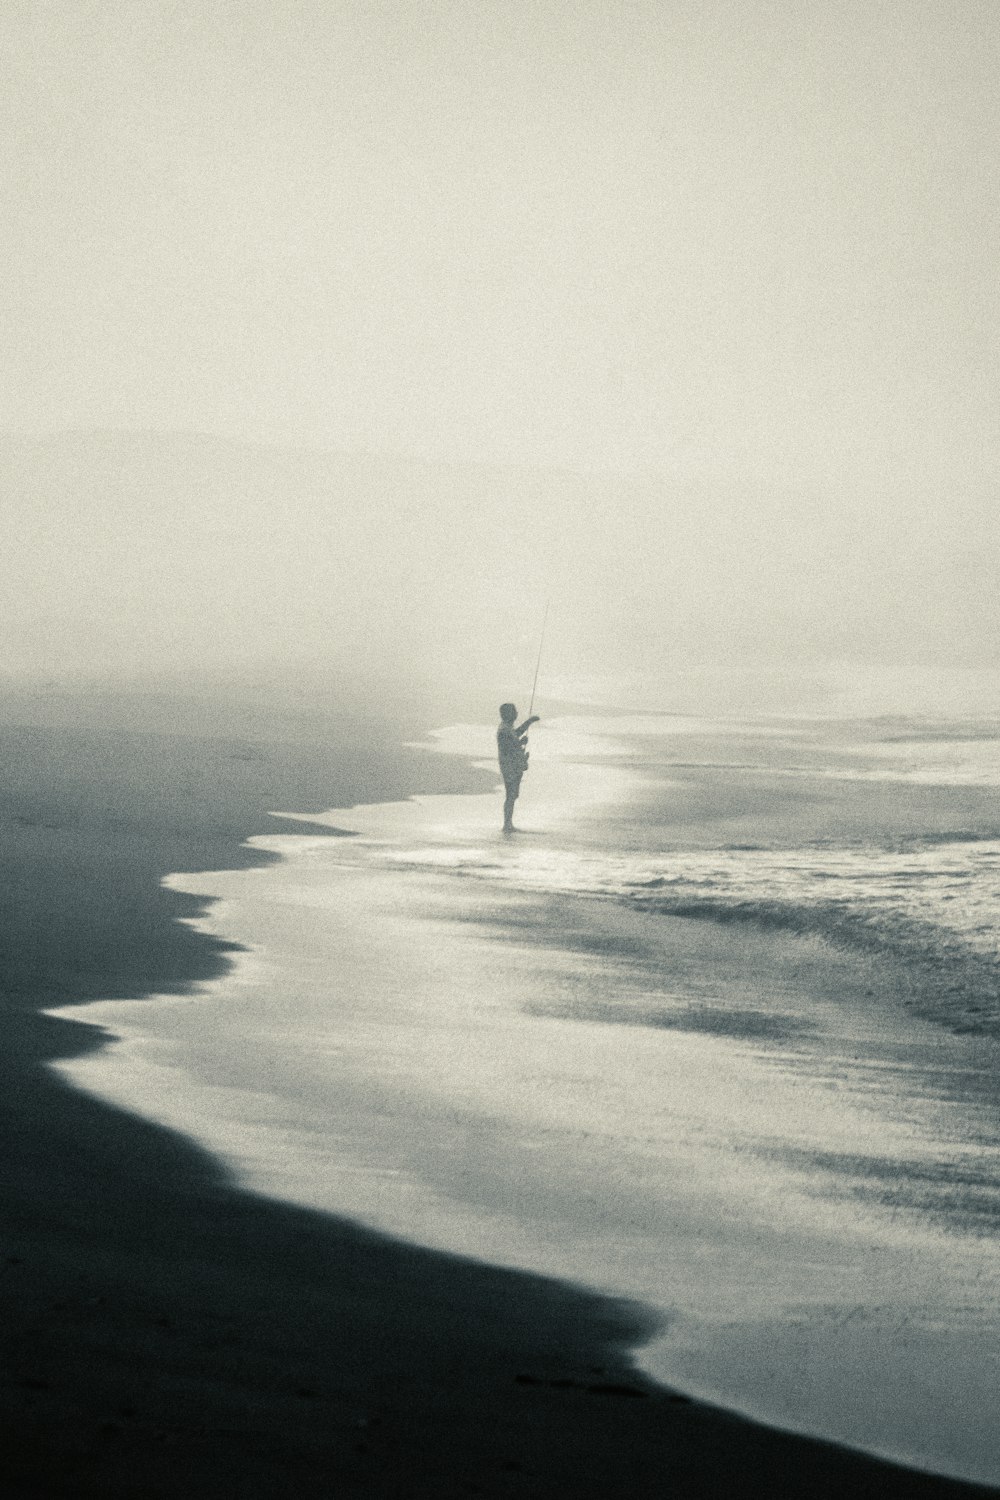 Una persona sosteniendo una cometa en una playa